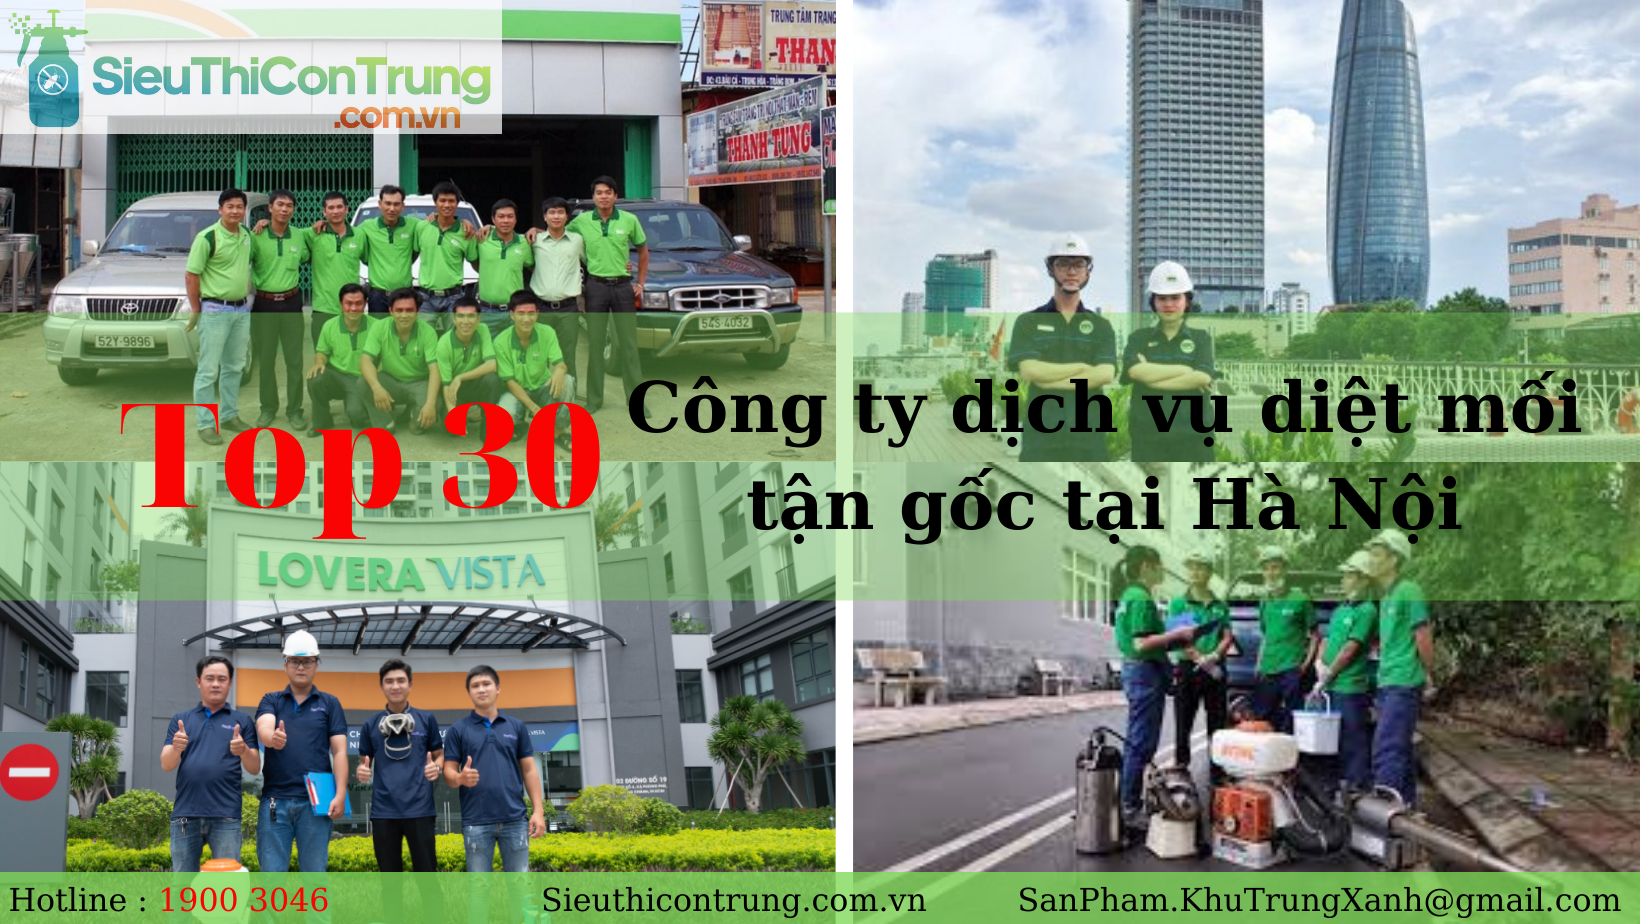 THAM KHẢO 30 công ty dịch vụ diệt mối tận gốc tại Hà Nội